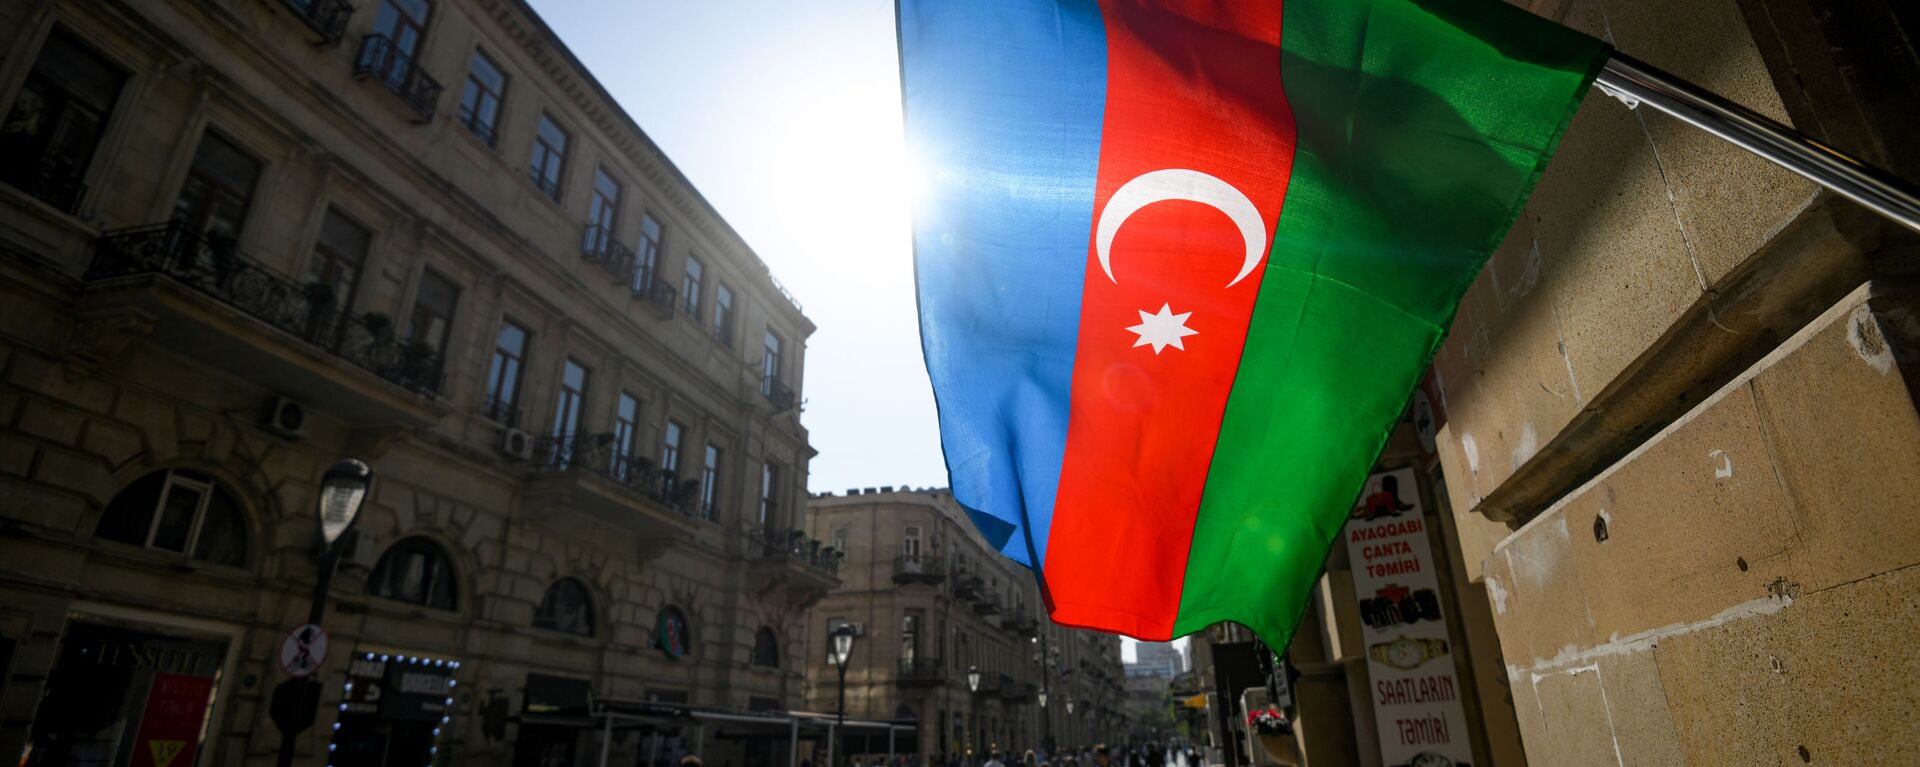 Azerbaycan bayrağı - Bakü  - Sputnik Türkiye, 1920, 27.02.2021